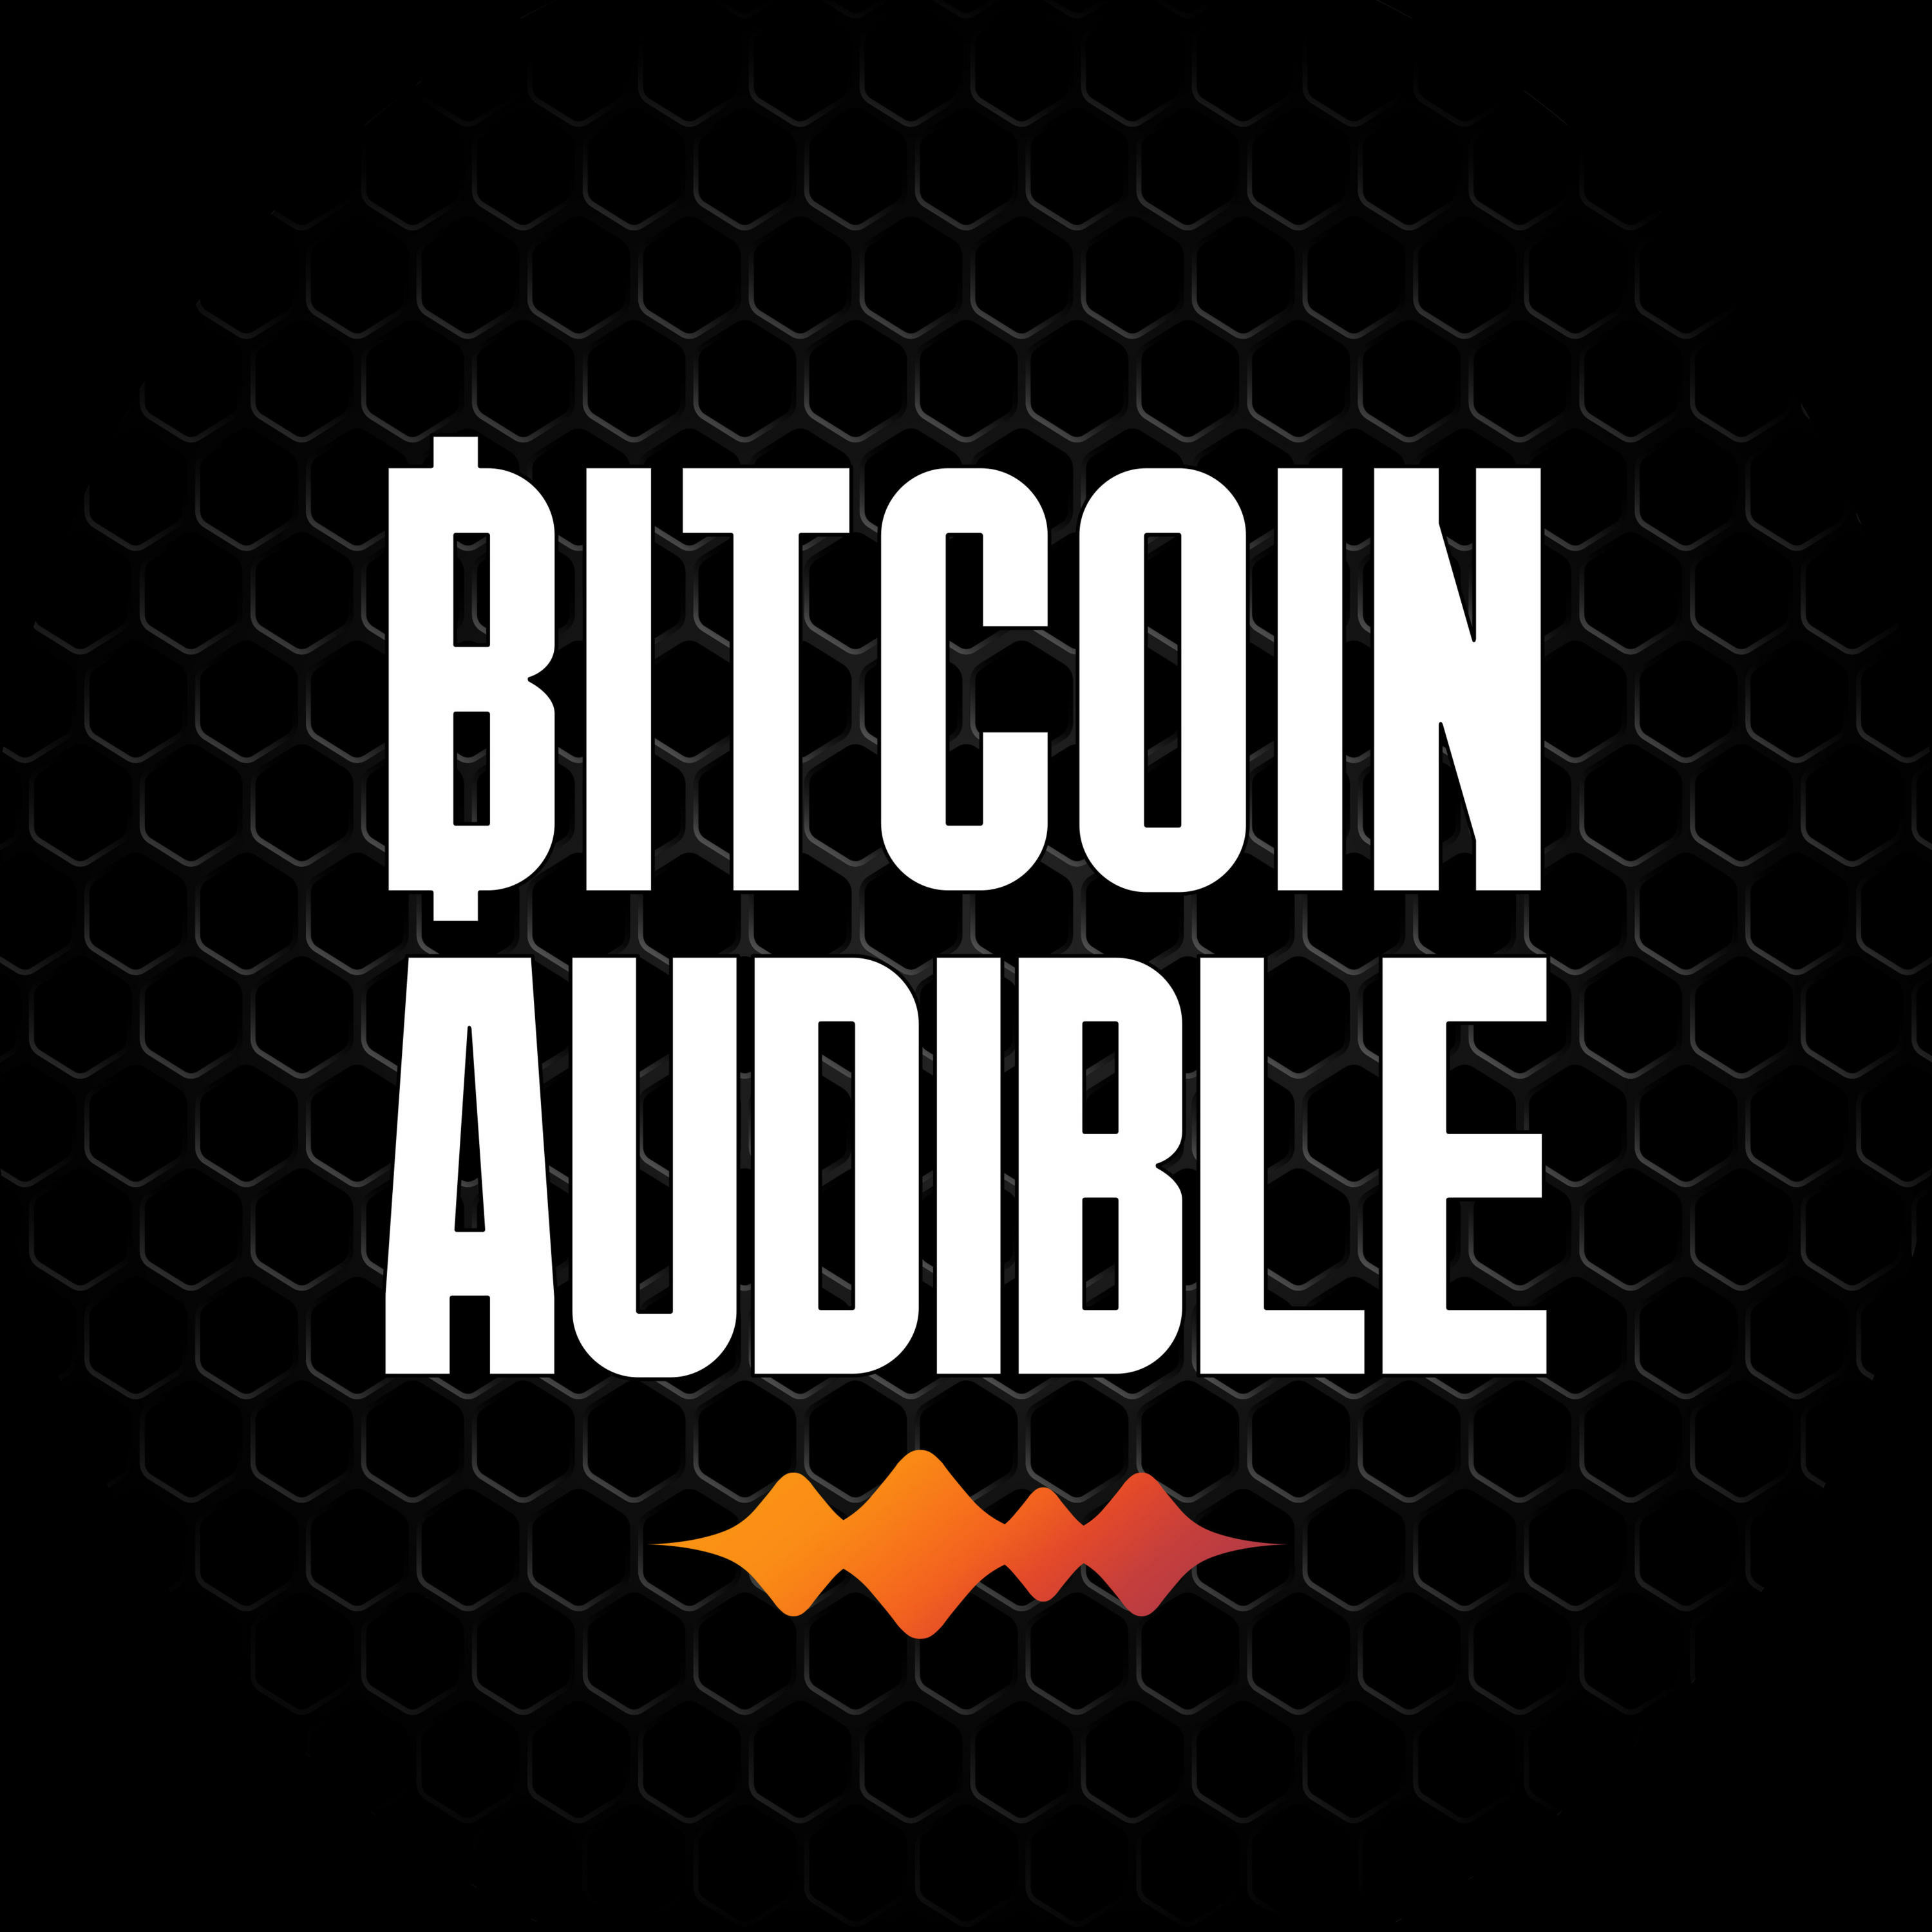 Read_760 - Drivechain's Place in Bitcoin's Future